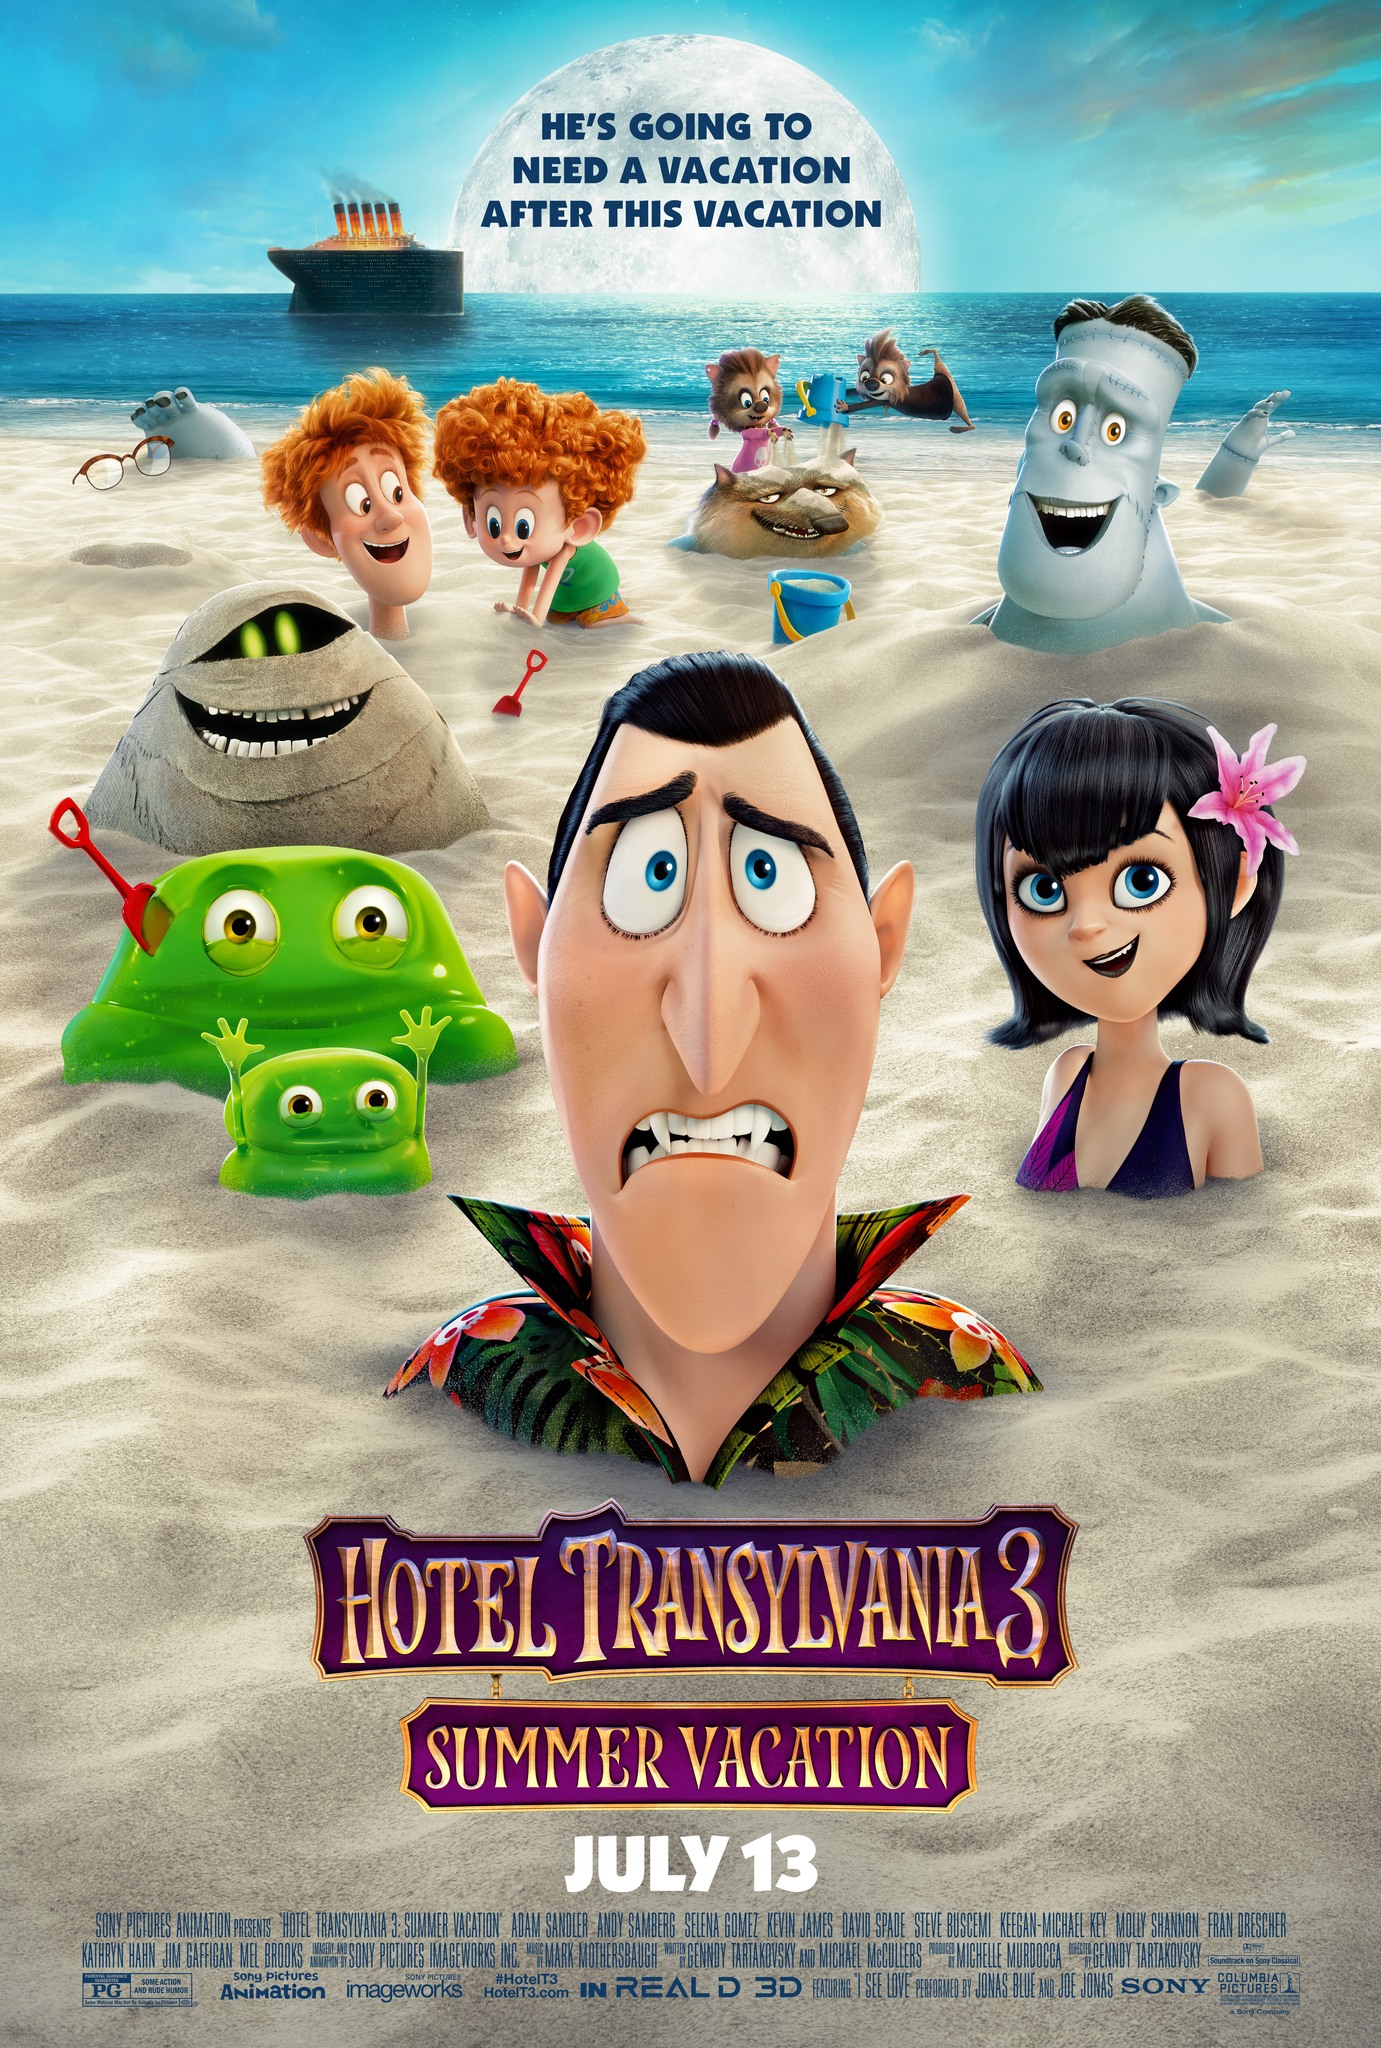 ดูหนังออนไลน์ฟรี Hotel Transylvania 3 Summer Vacation (2018) โรงแรมผีหนี ไปพักร้อน 3